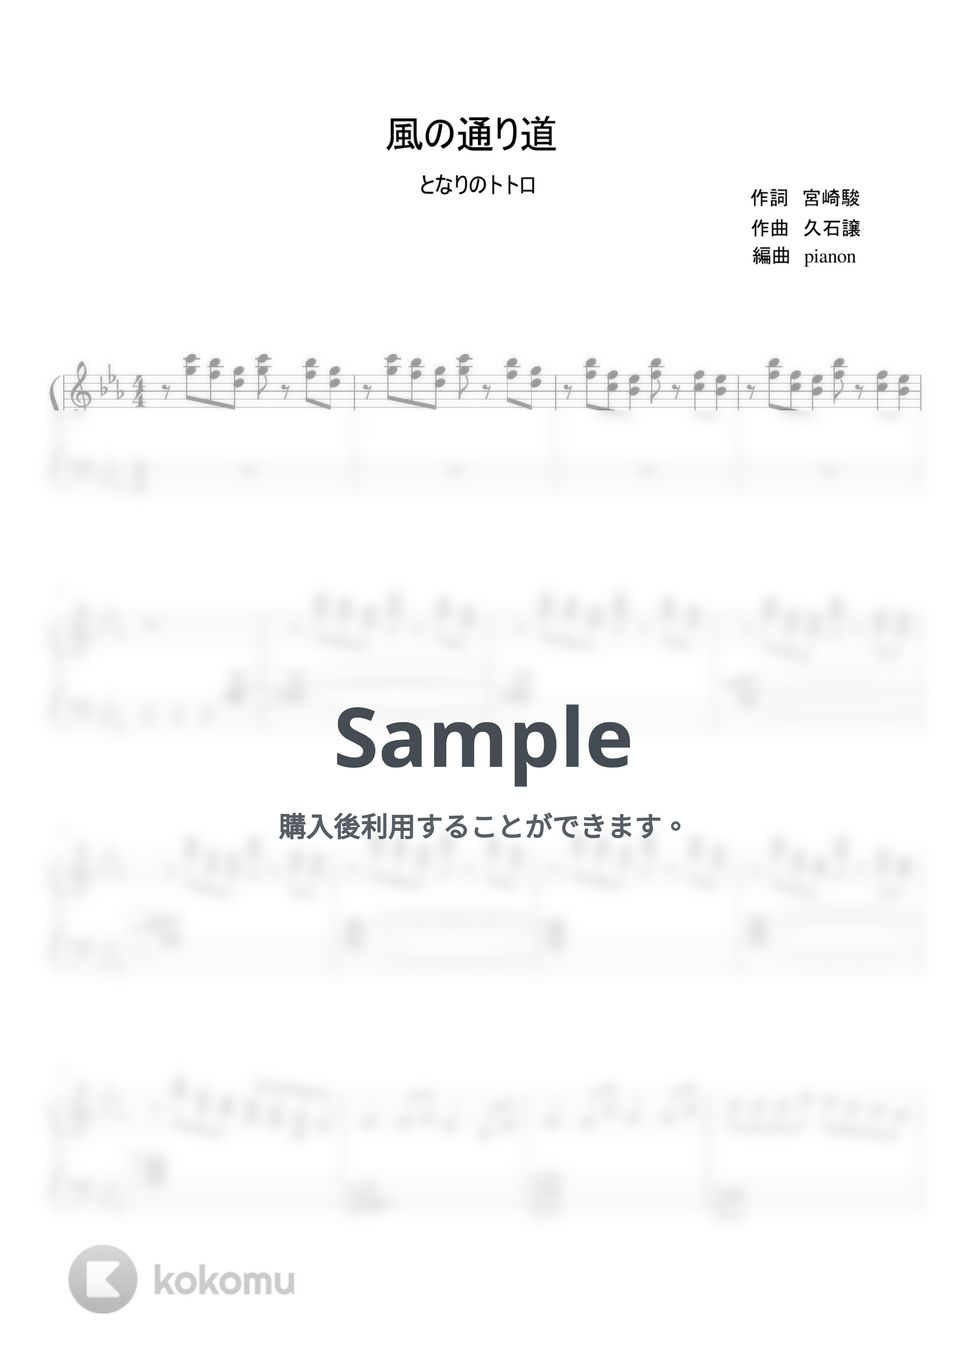 久石譲 - 風のとおり道 (ピアノ上級ソロ) by pianon